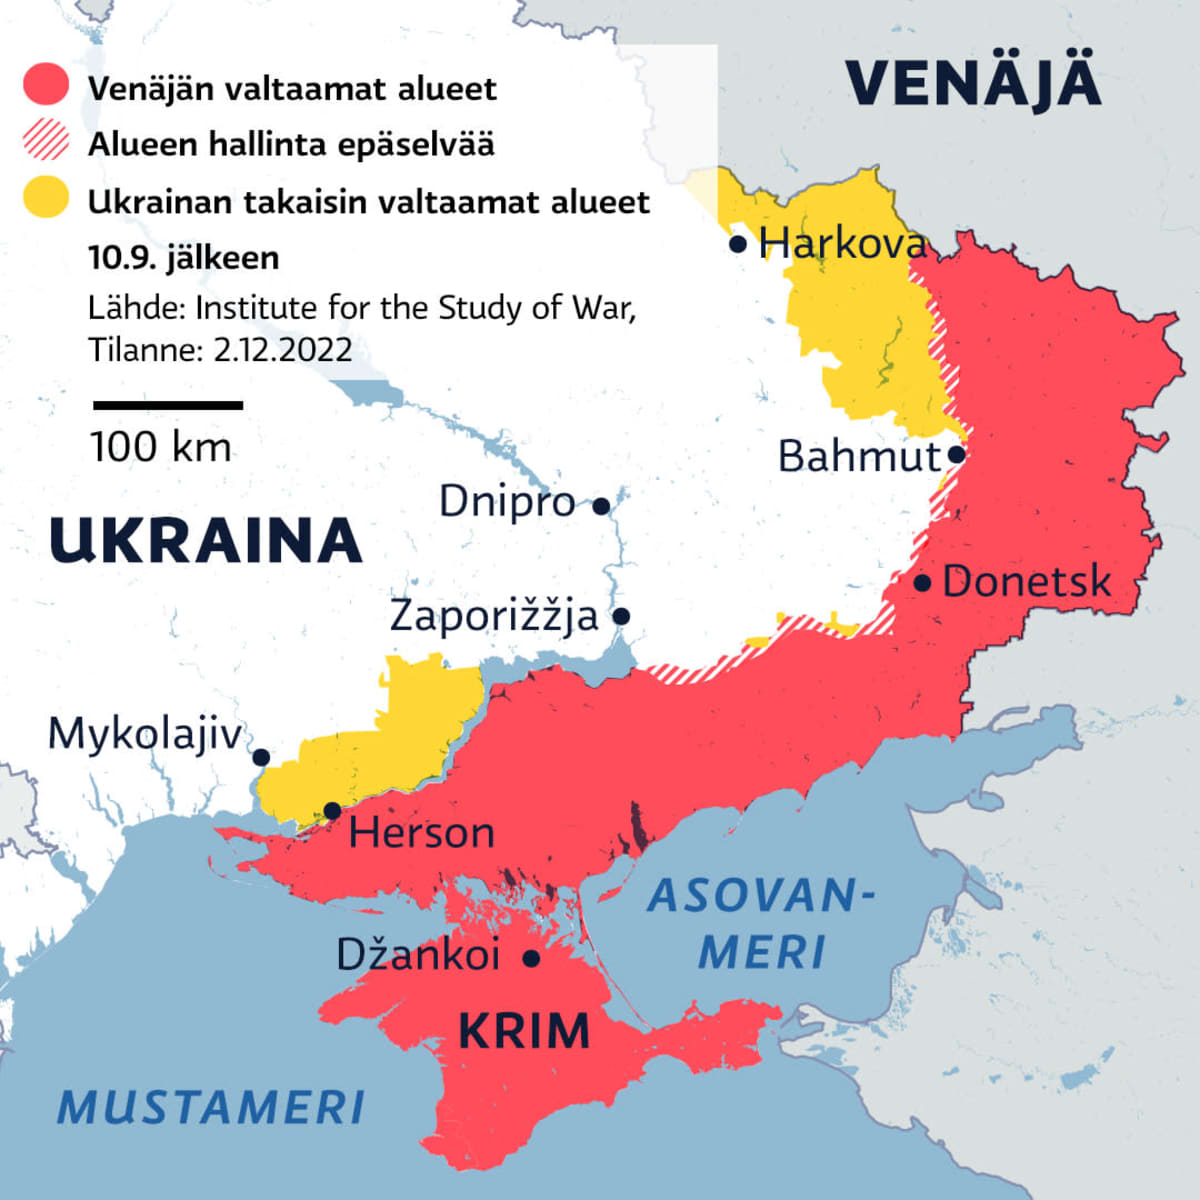 Kartalla Venäjän valtaamat alueet Ukrainassa 2.12.2022.